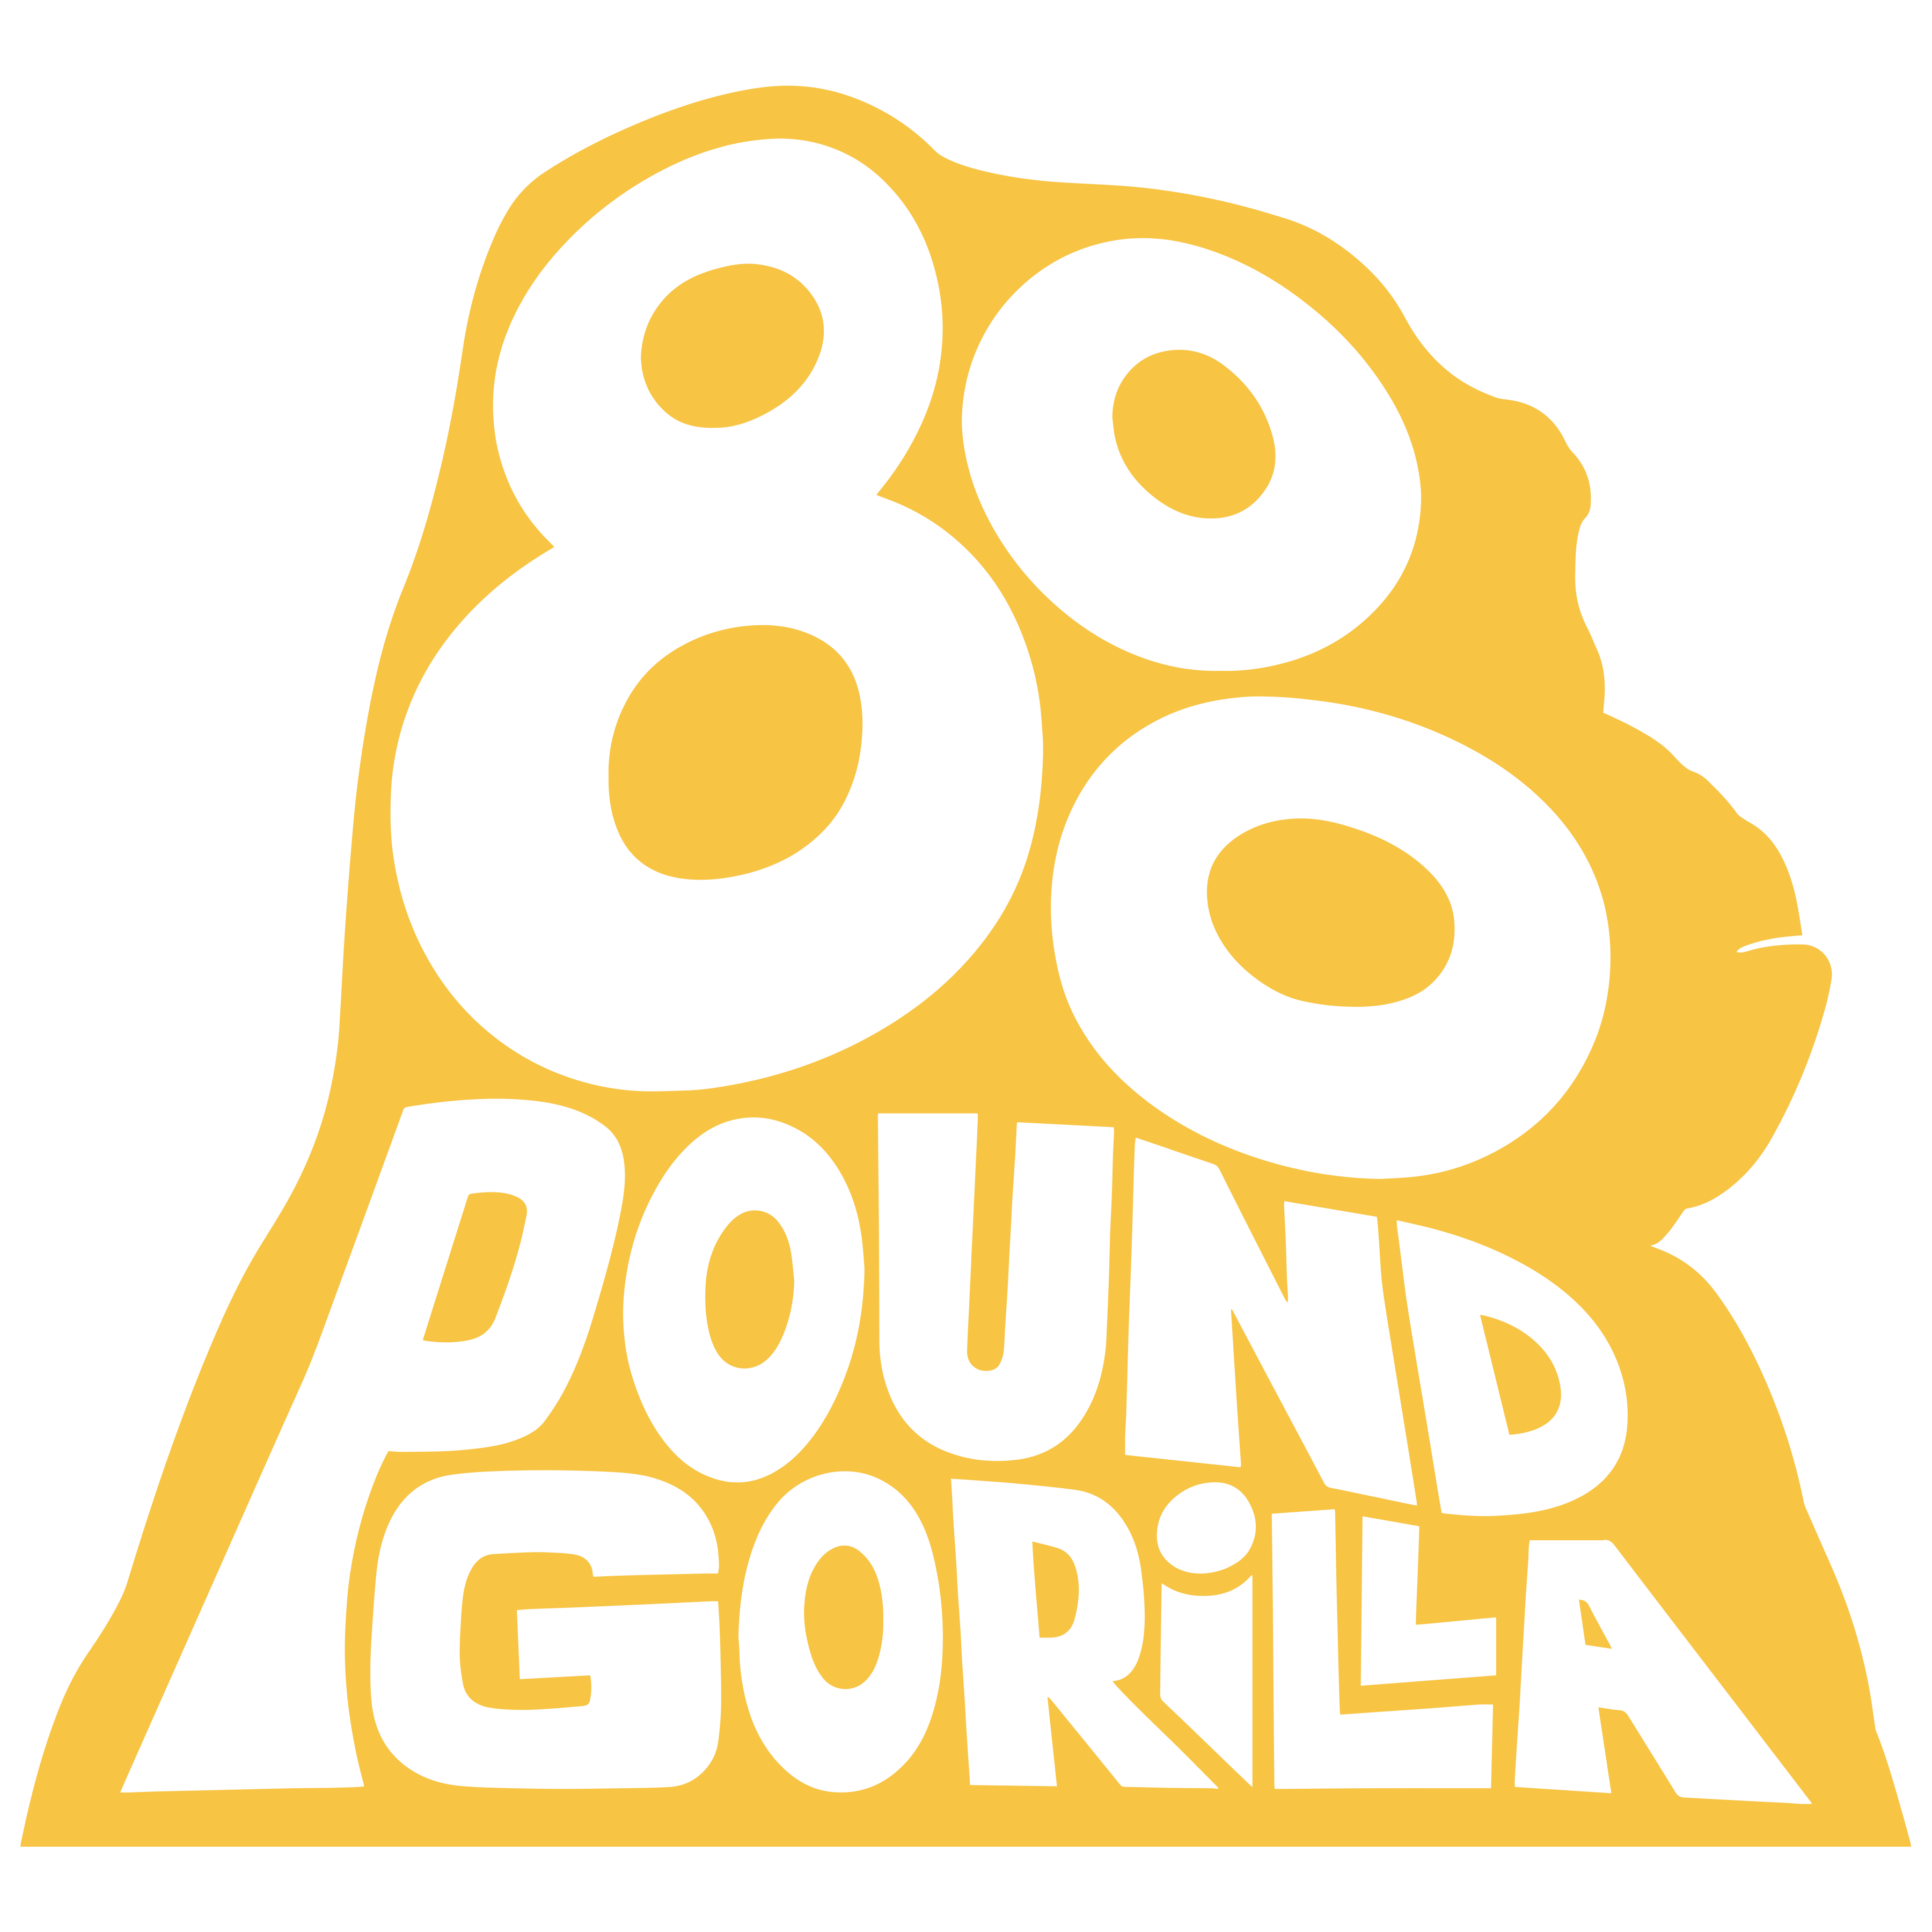 800 Pound Gorilla